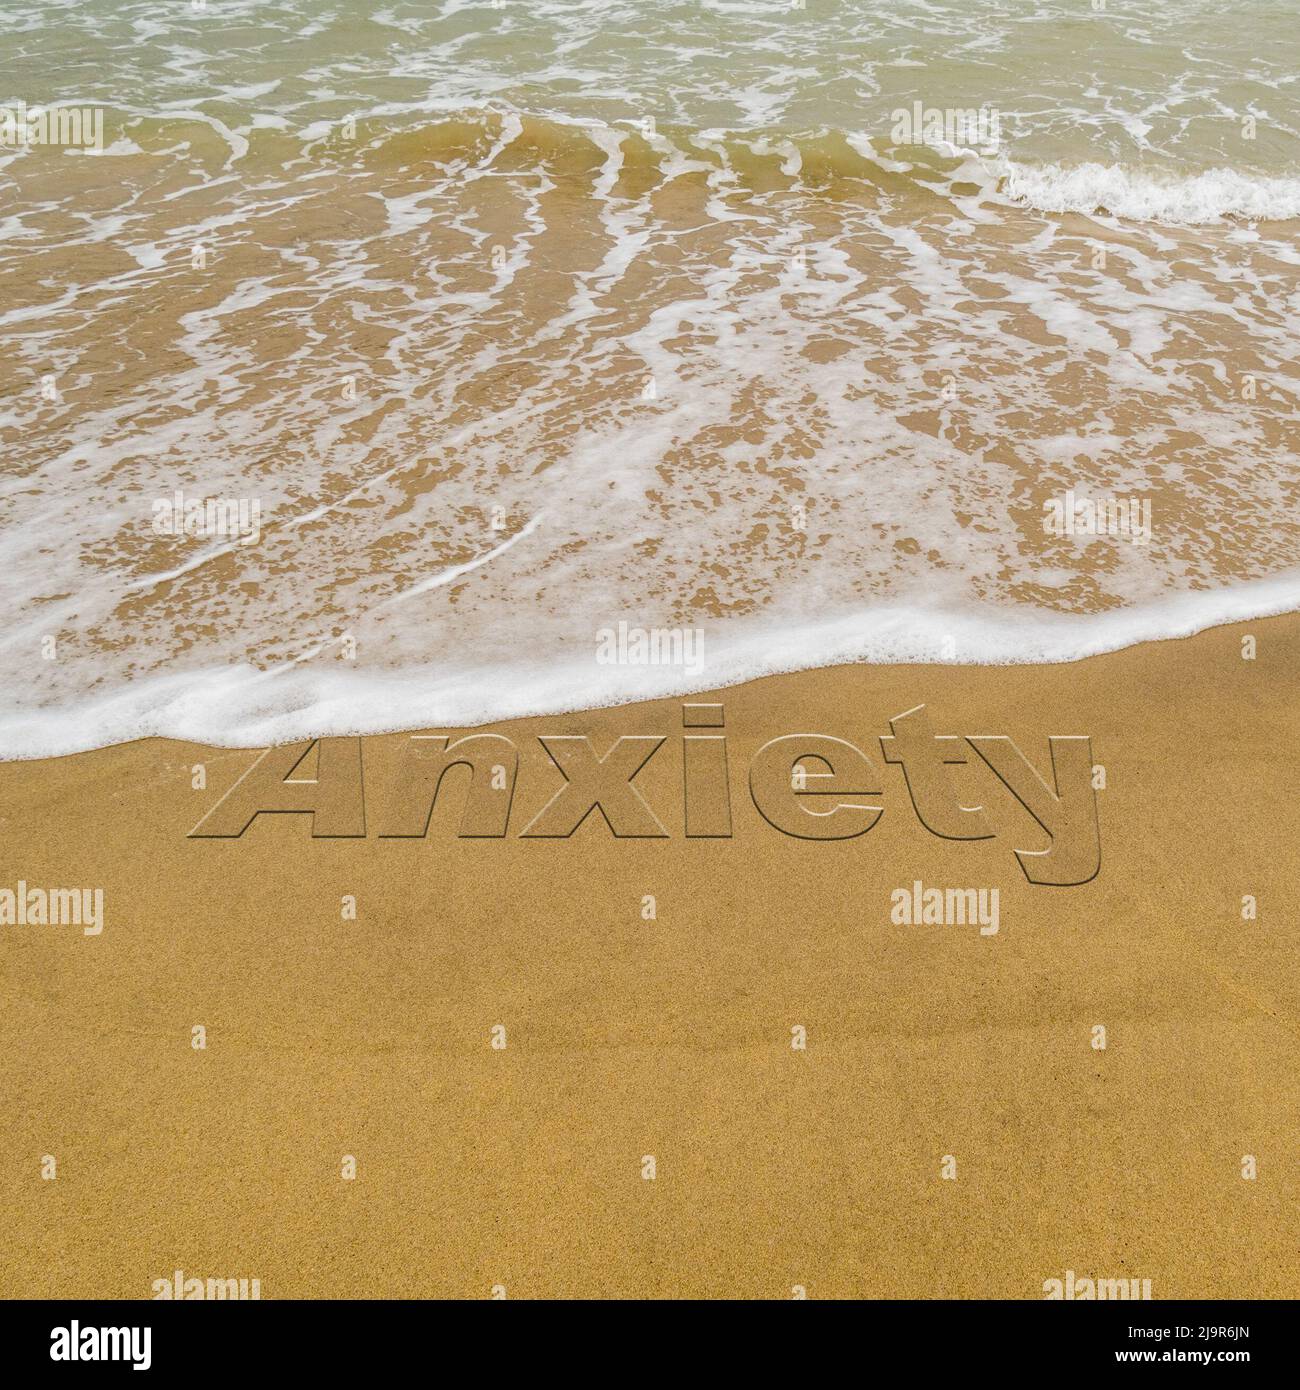 Immagine di concetto - per illustrare il lavaggio via lo sforzo prendendo una vacanza mentre le onde su una spiaggia sabbiosa lavano via la parola 'ansia' scritta nella sabbia. Foto Stock